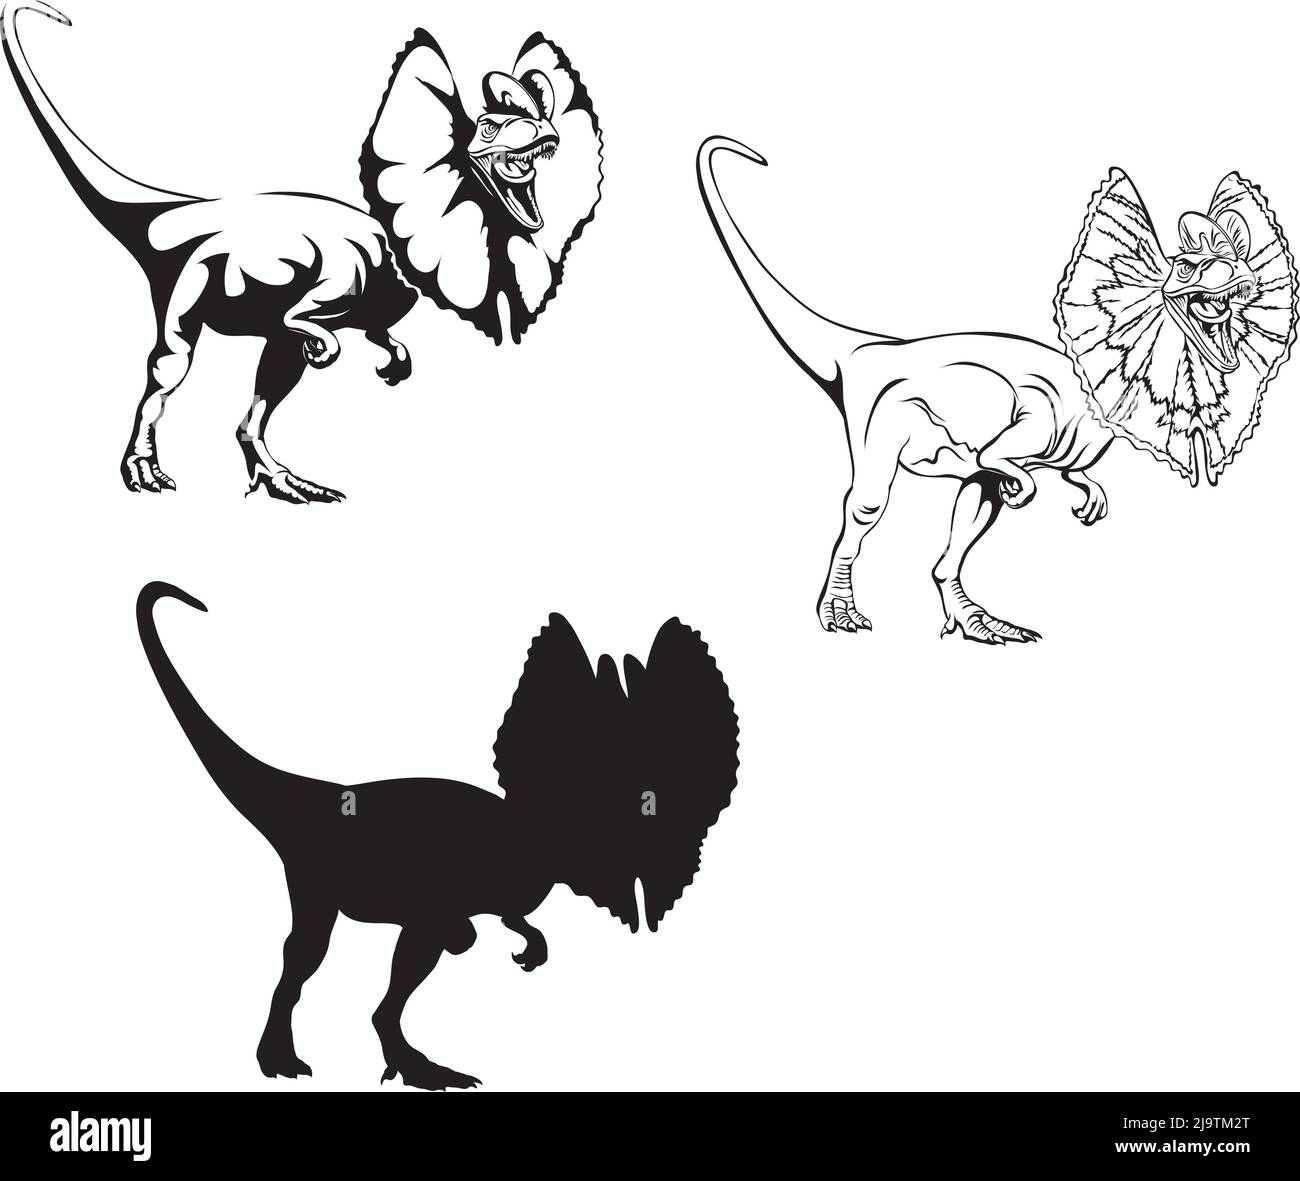 Illustration Vectorielle D'un Drôle Dinosaure Assis Près D'un Vieil Appareil  Vecteur par ©olyaruta.yandex.ru 386871972